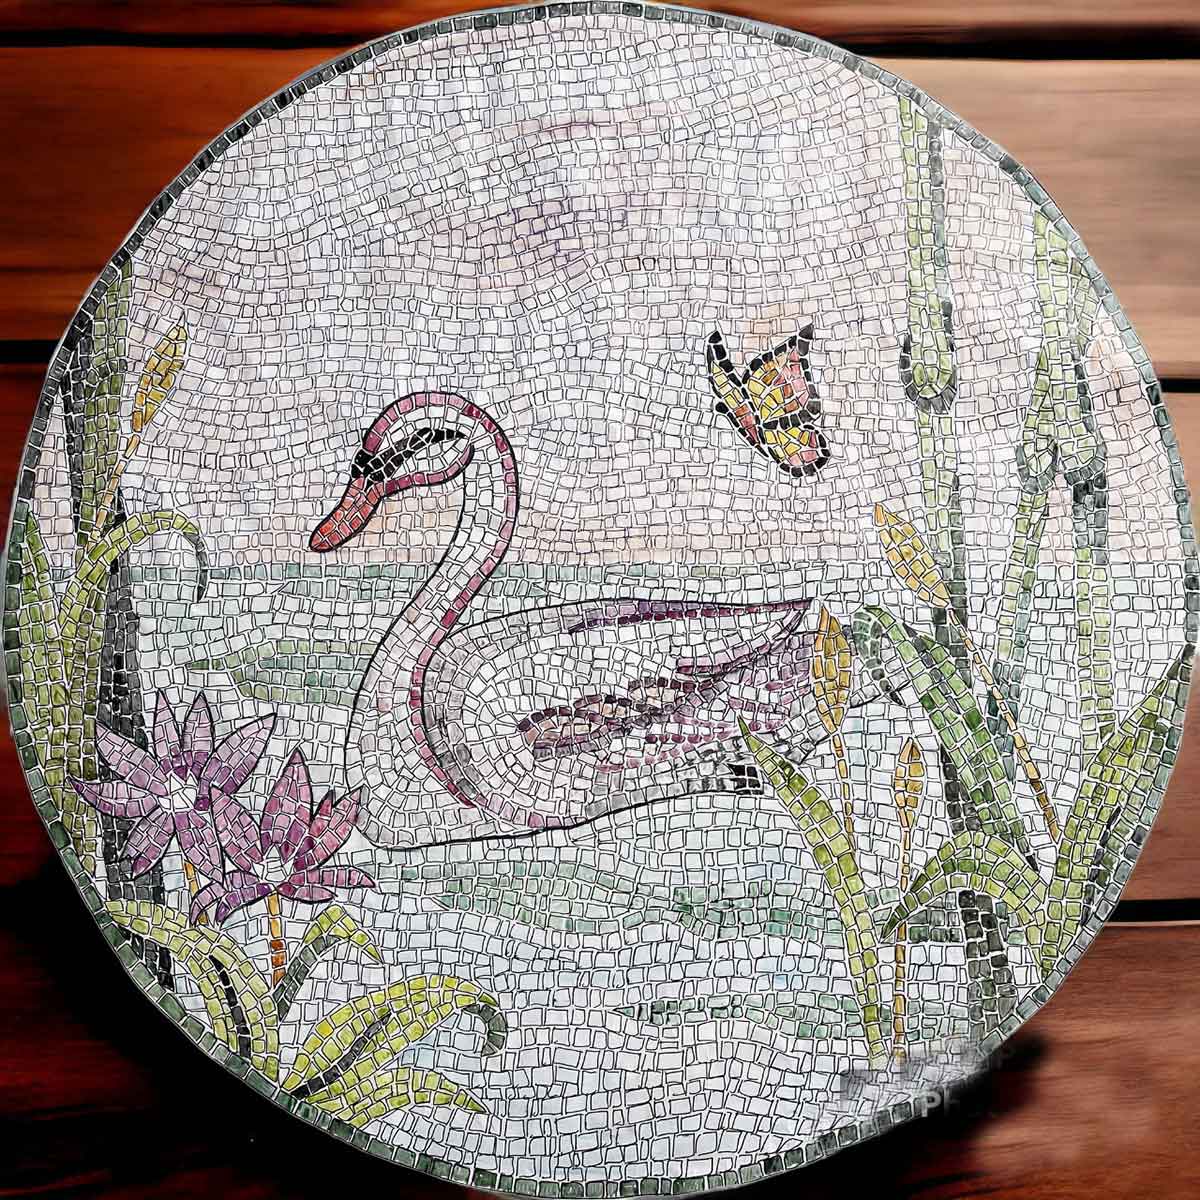 Kit mosaico CIGNO NEL LAGO (marmo - tecnica indiretta)